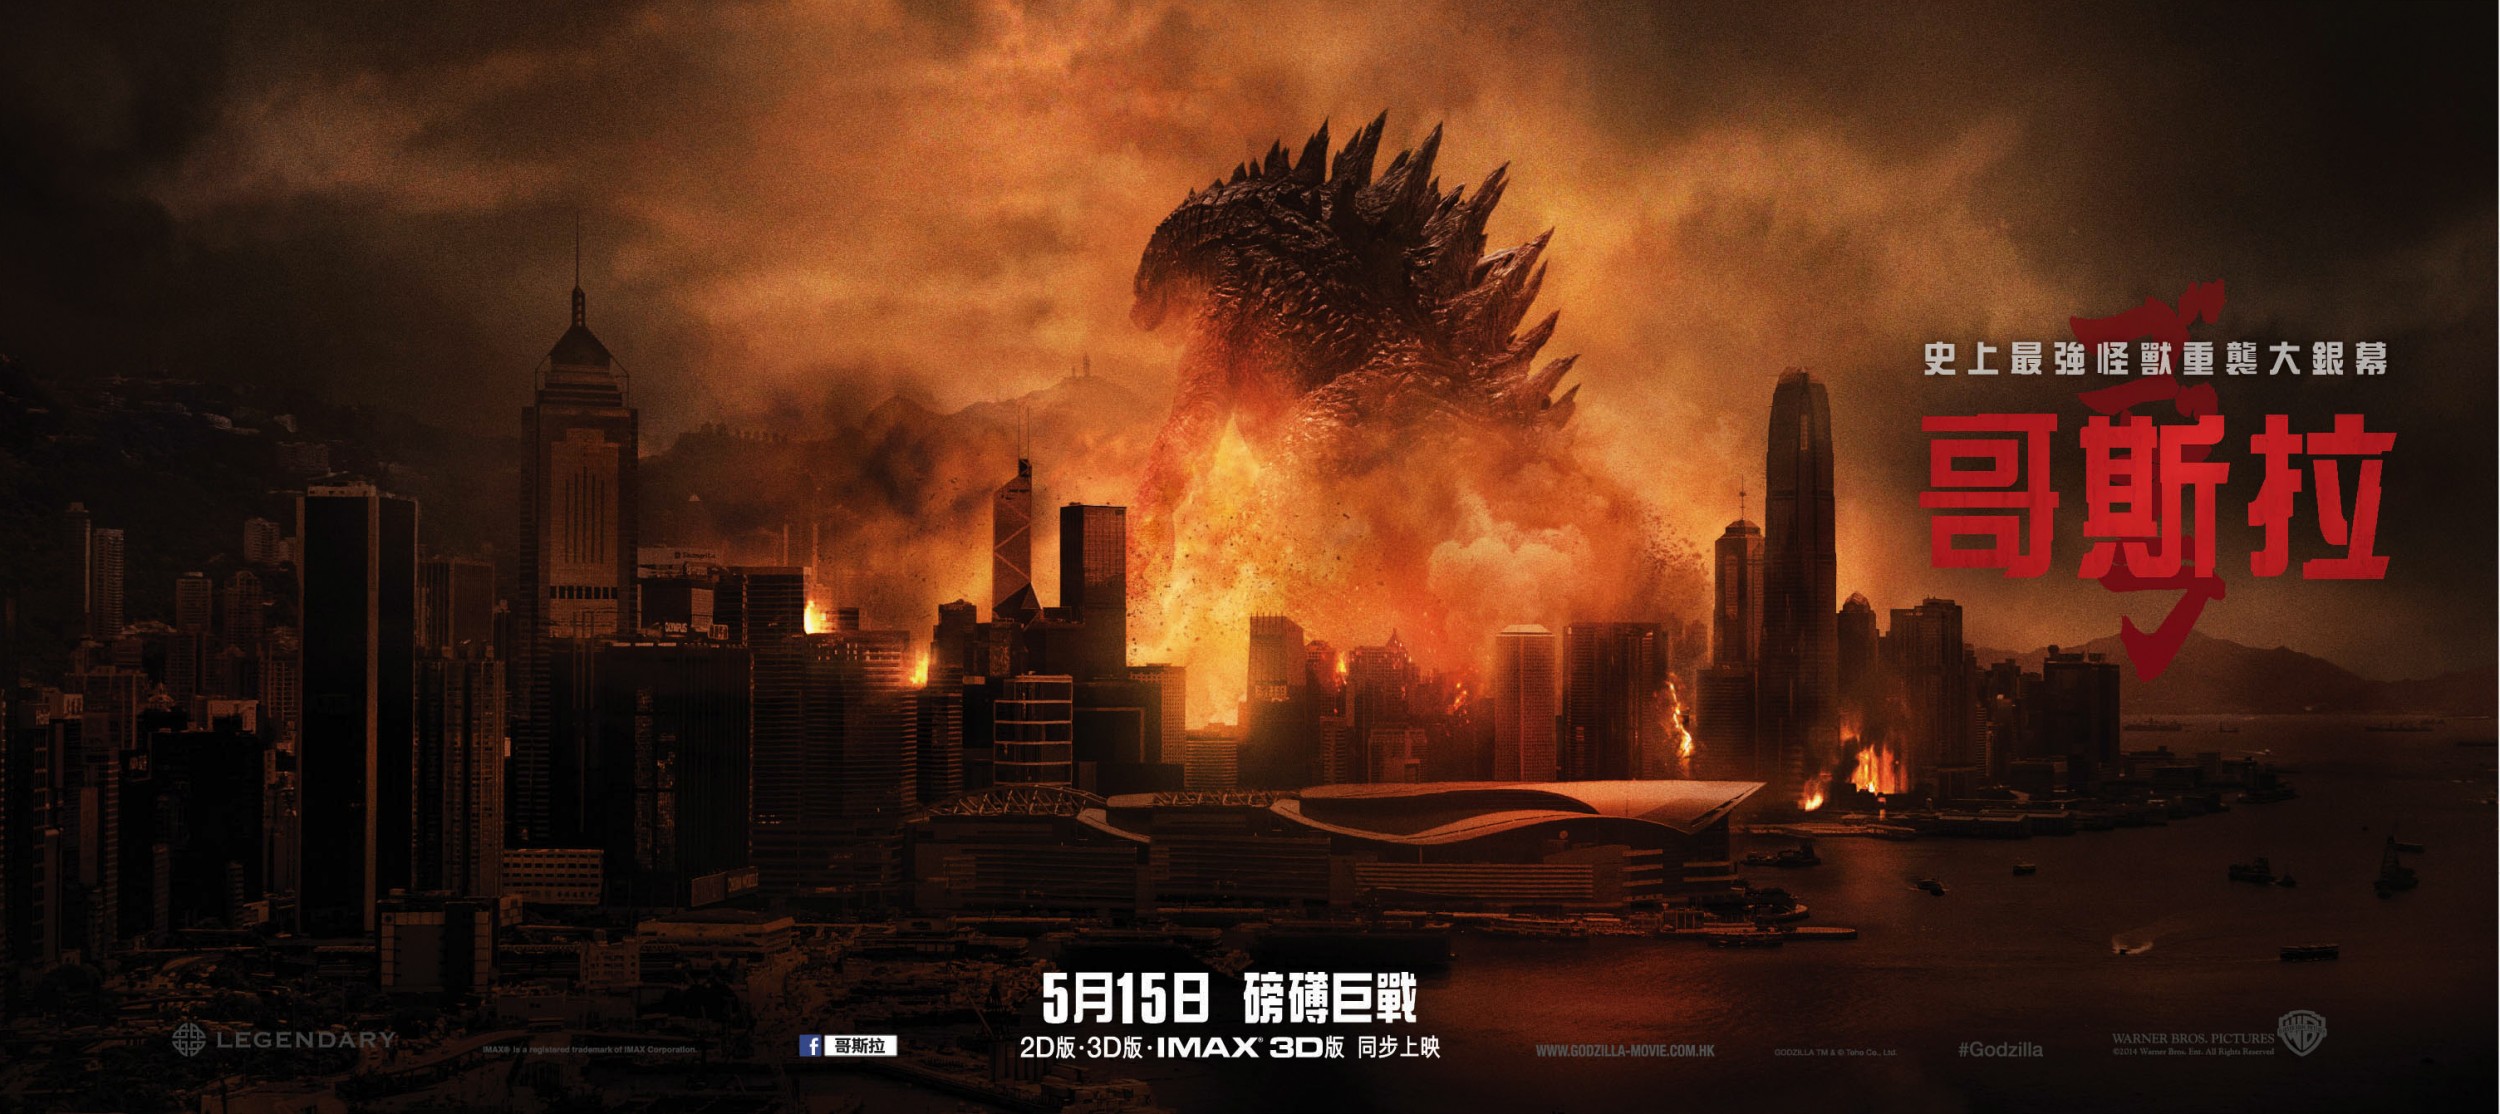 Mega Sized Movie Poster Image for Godzilla (#19 of 22)